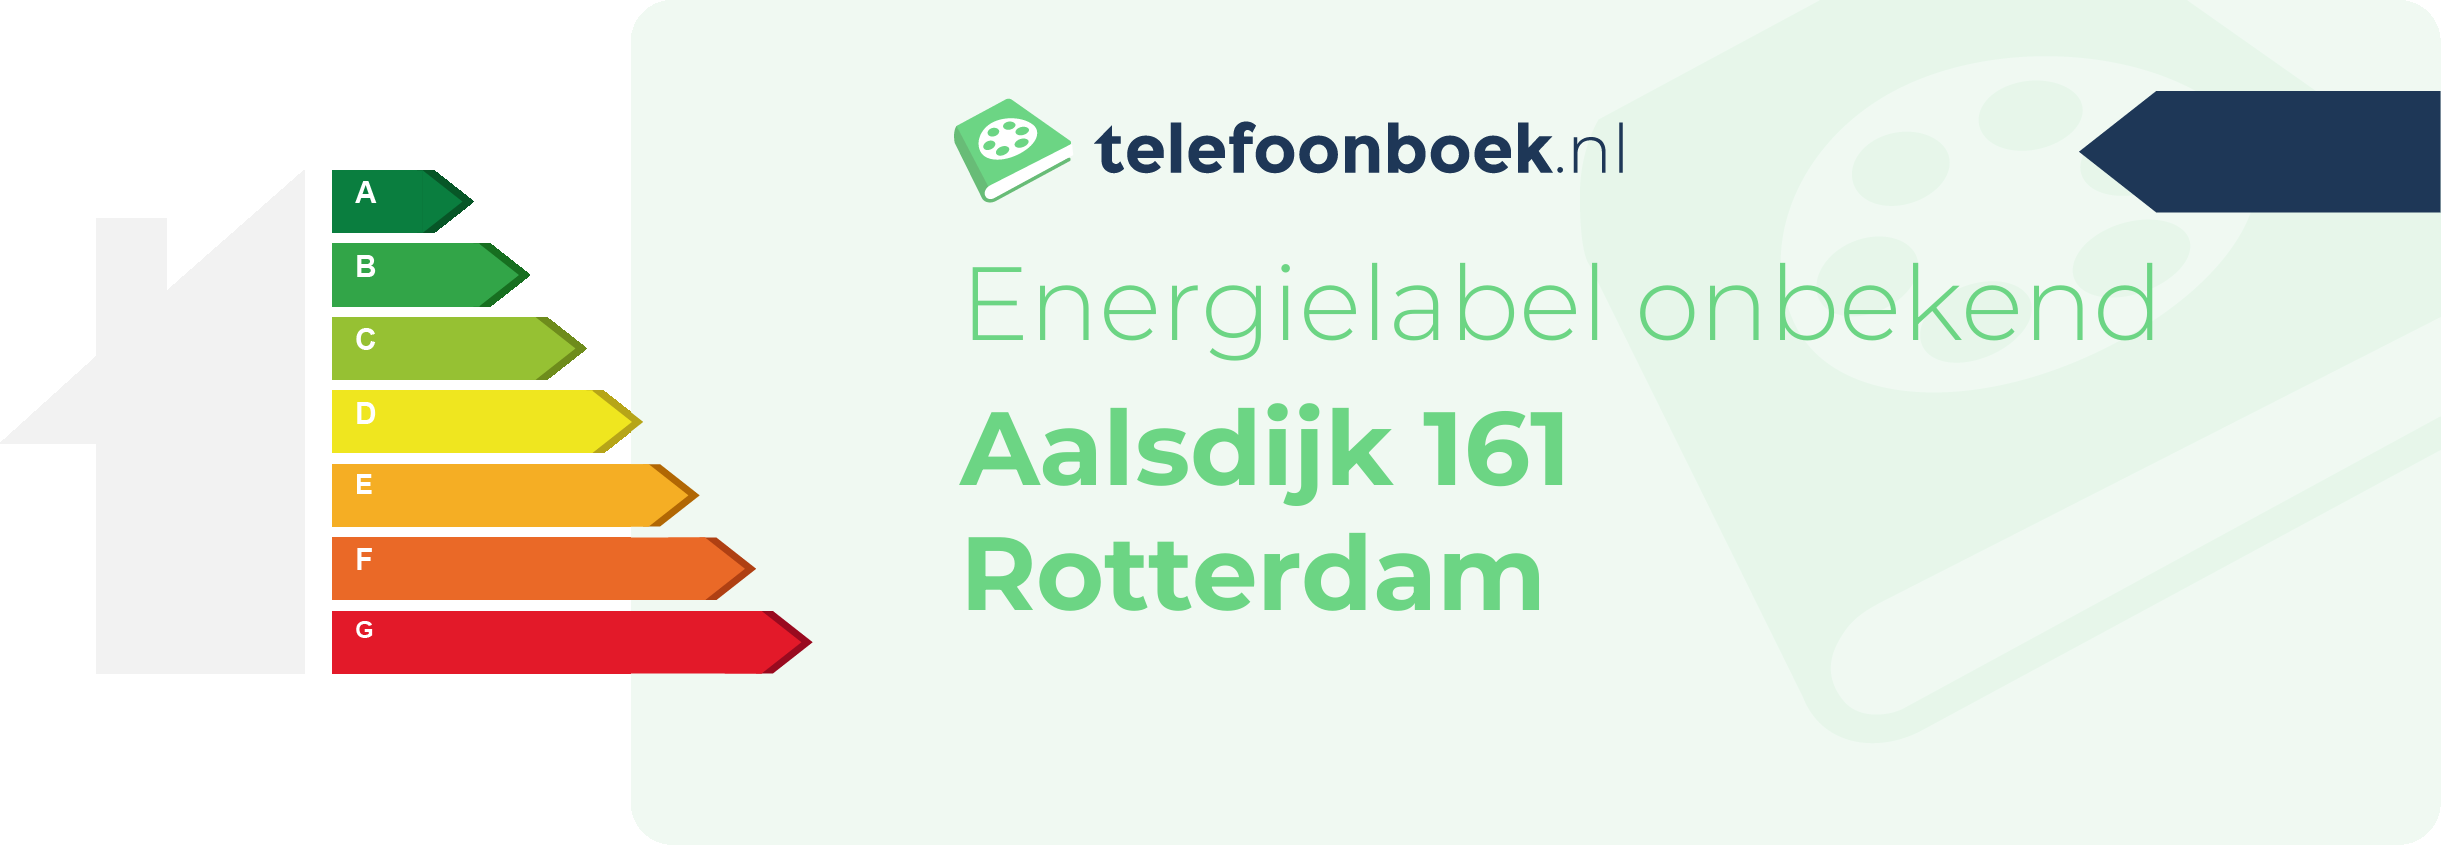 Energielabel Aalsdijk 161 Rotterdam